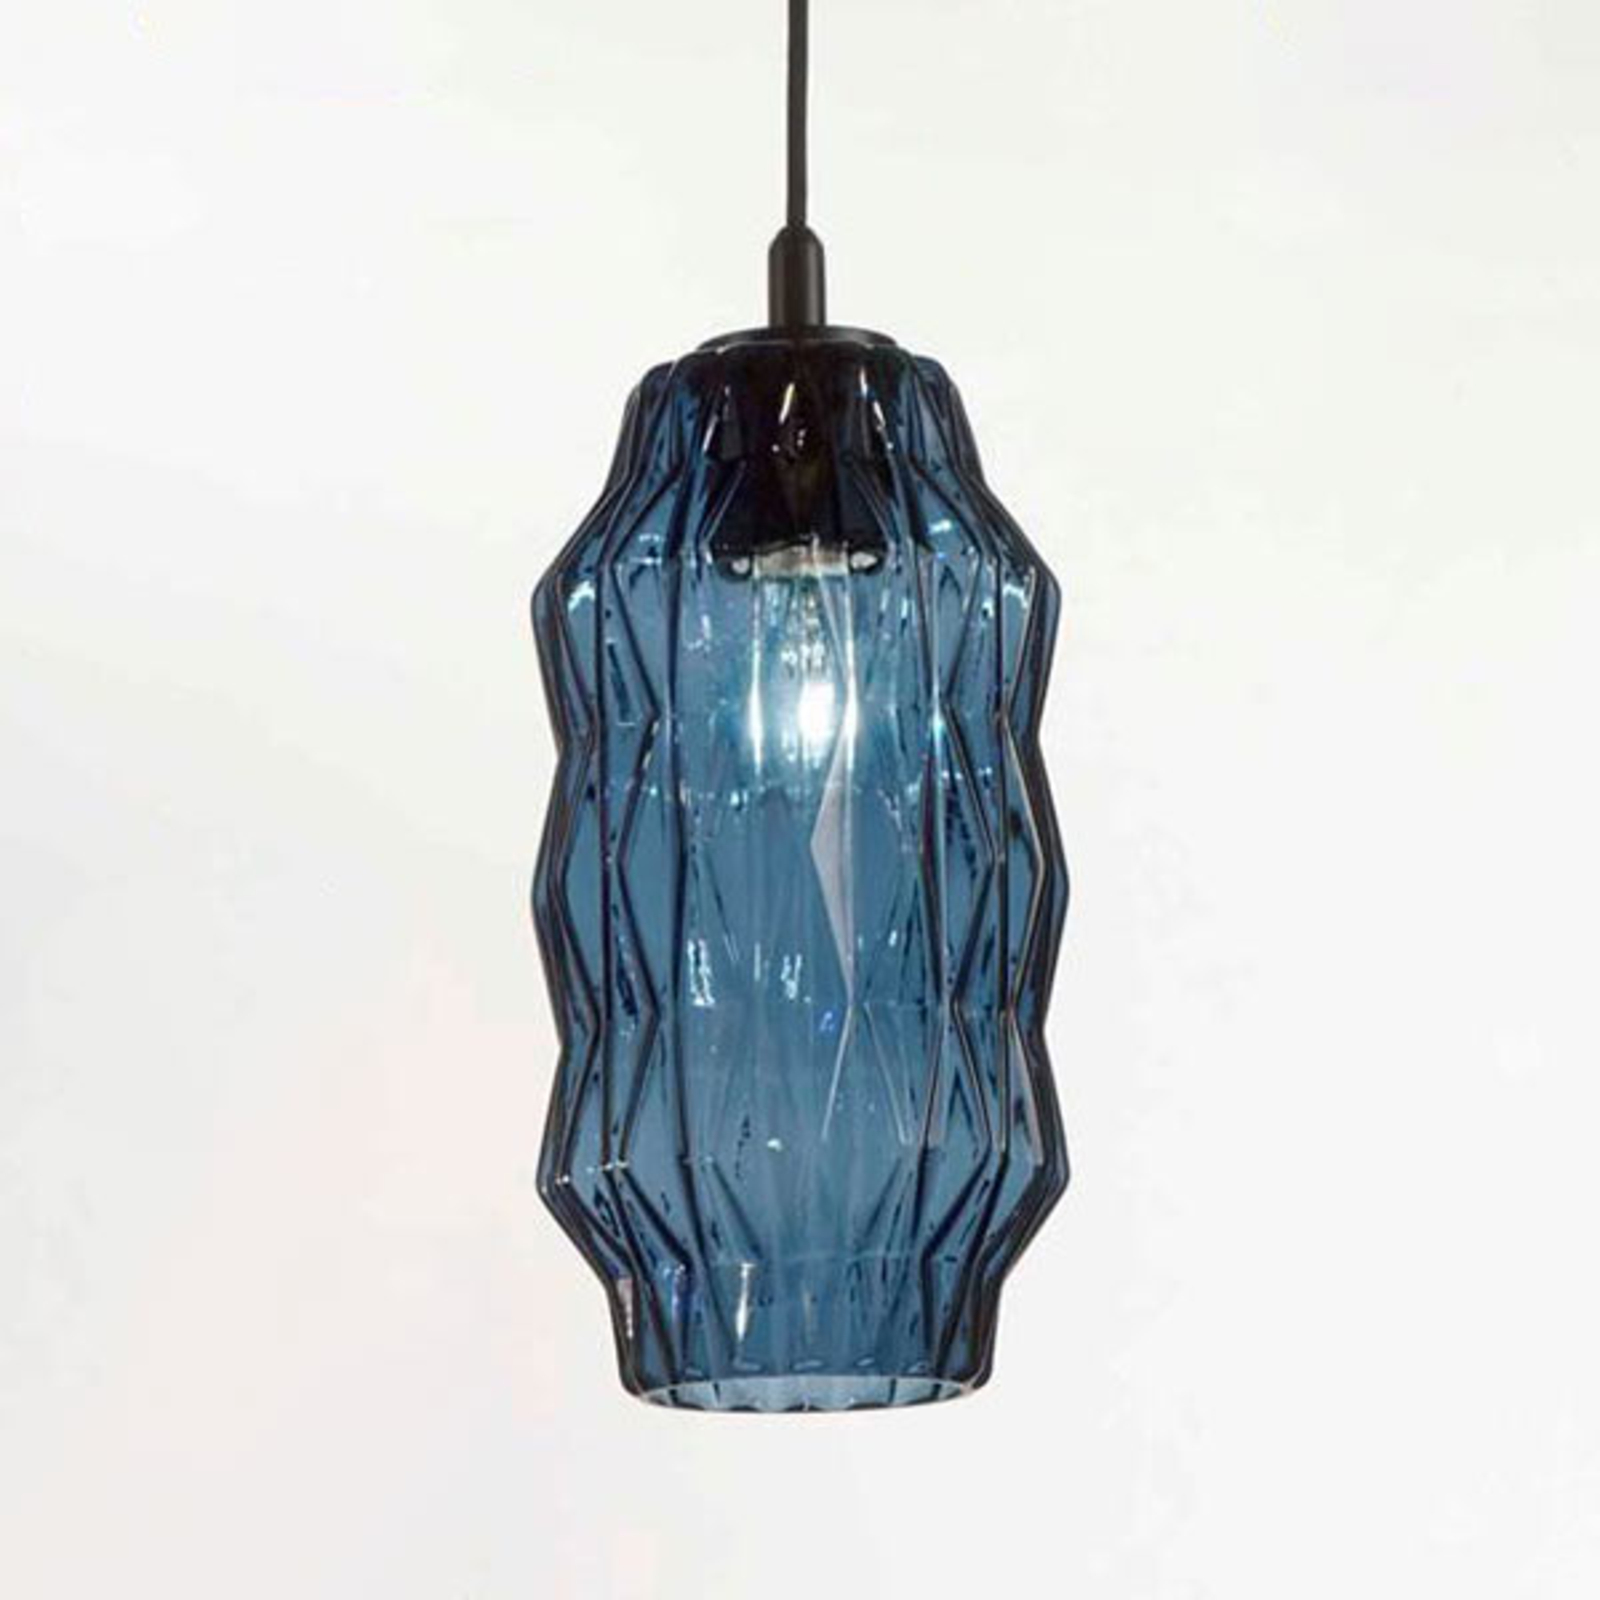 Hanglamp origami van glas, blauw